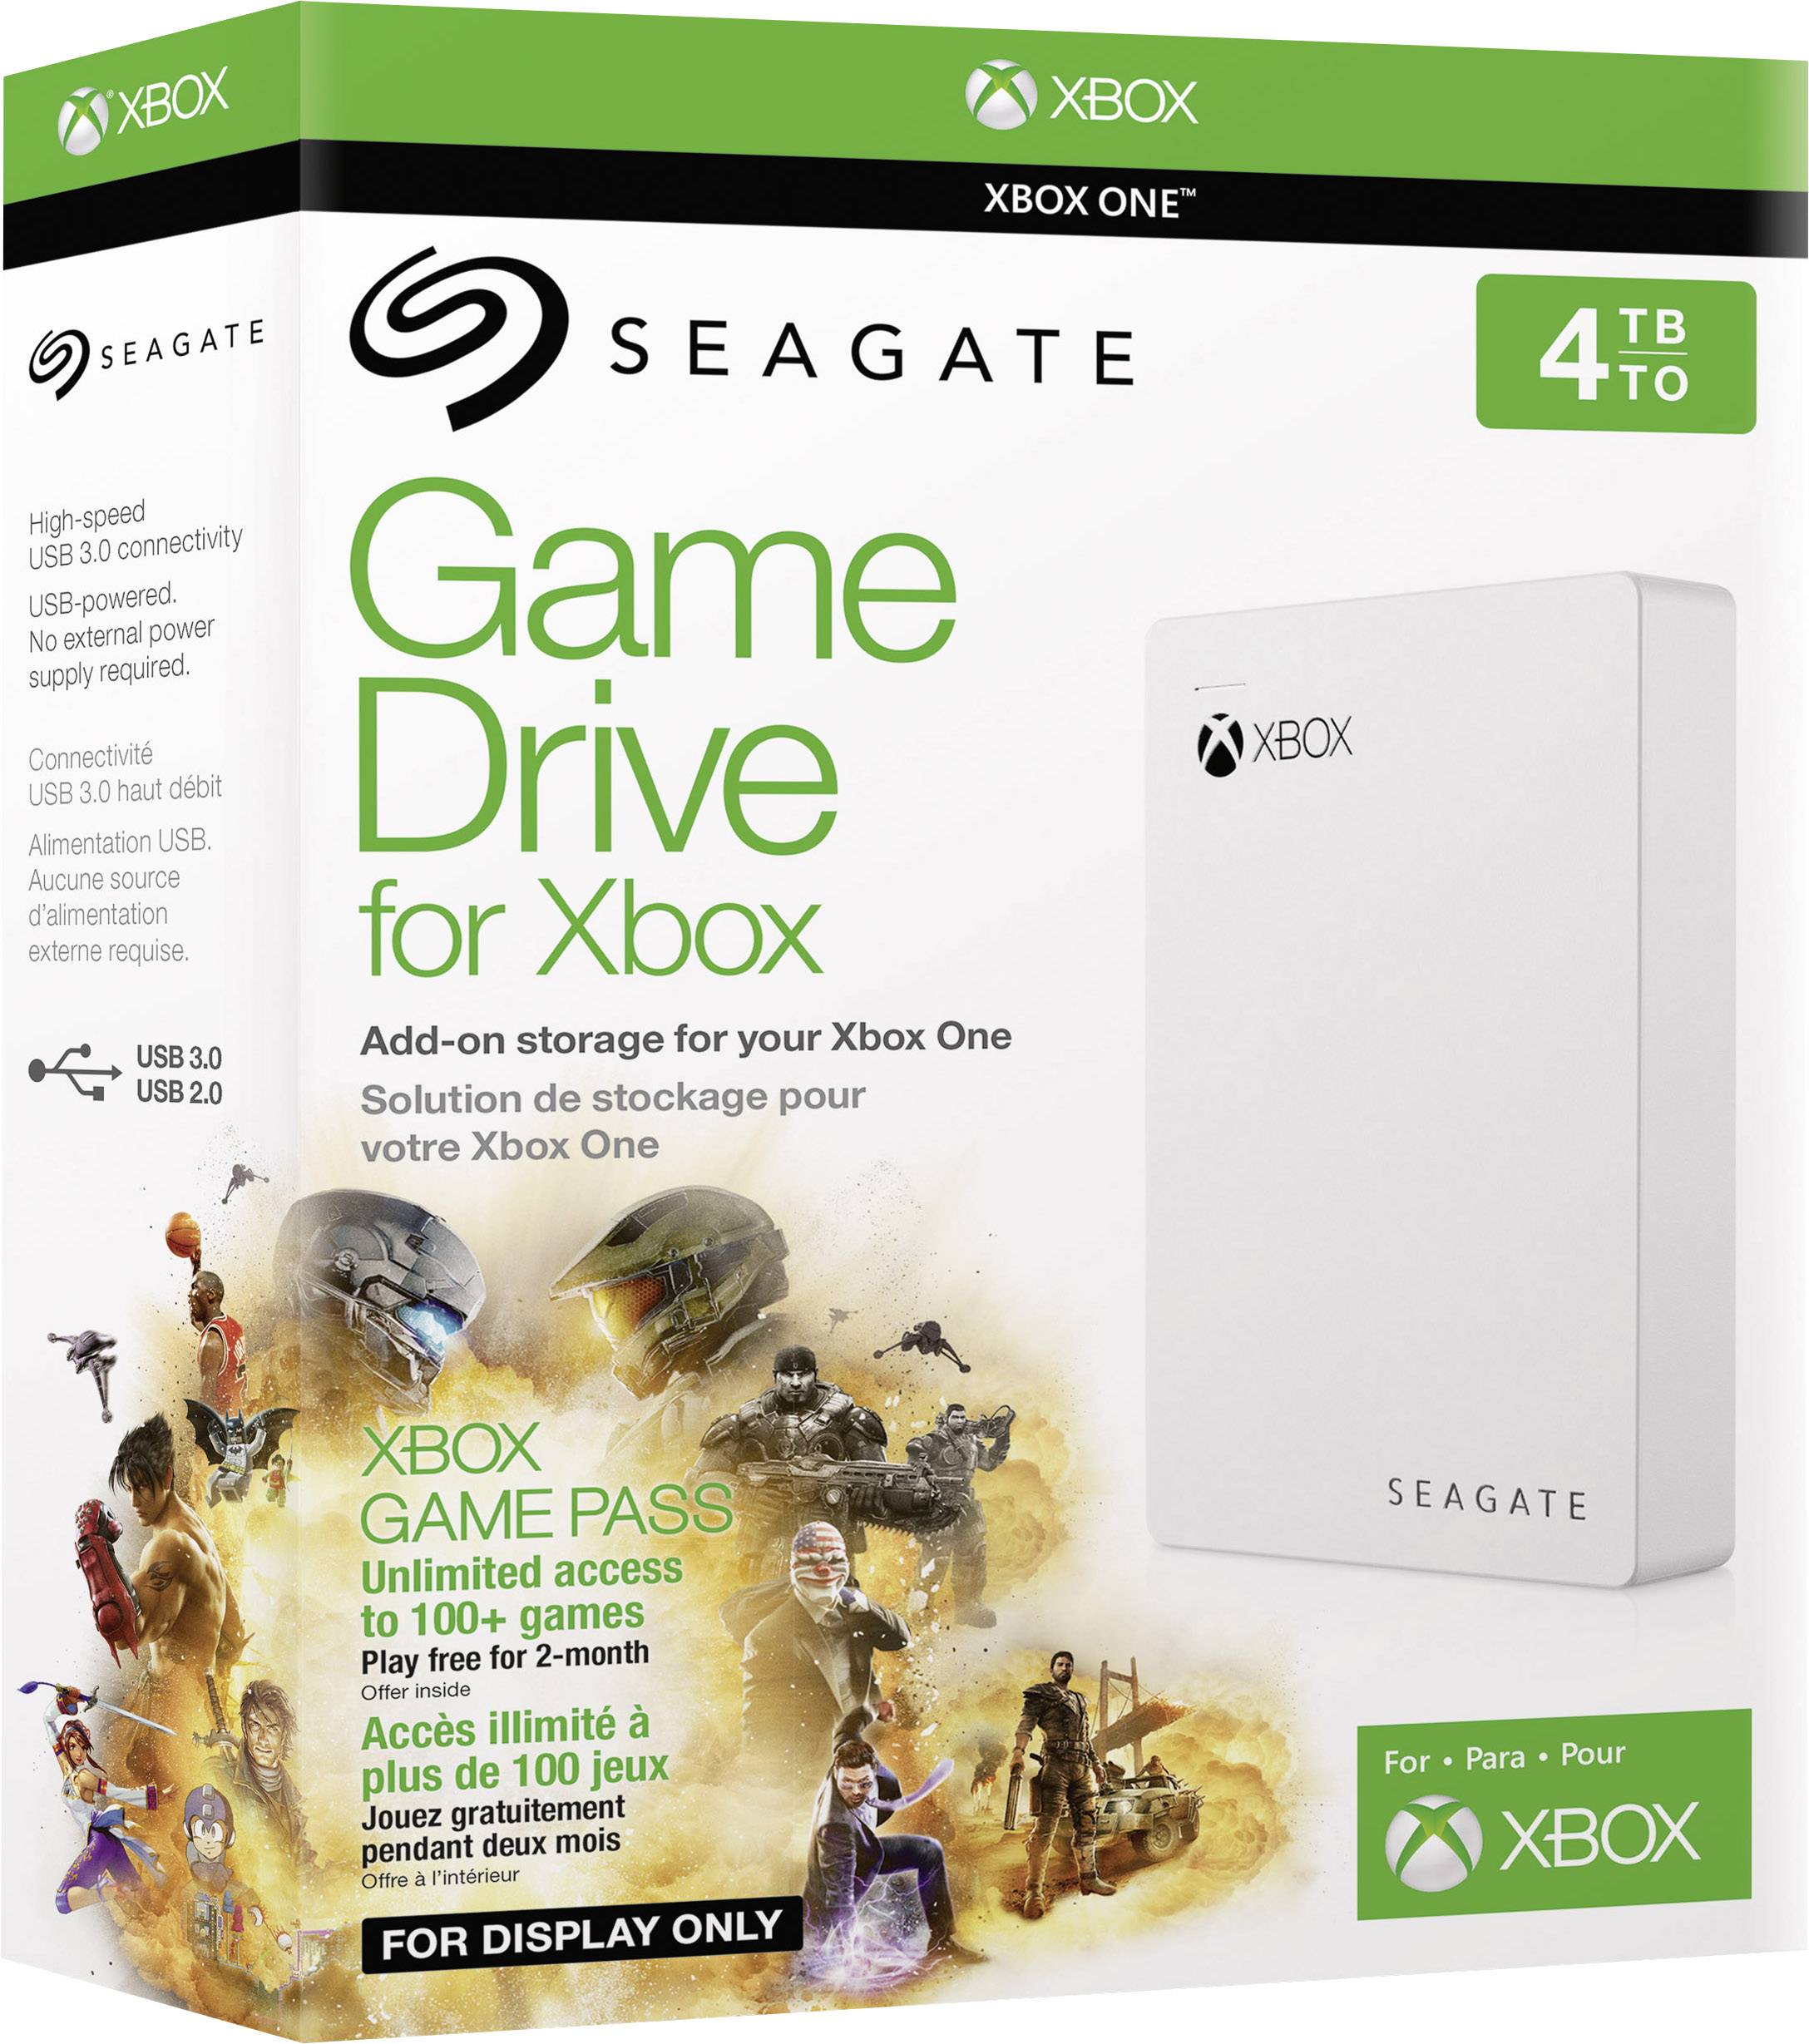 Seagate game Drive for Xbox 4tb. Seagate game drive